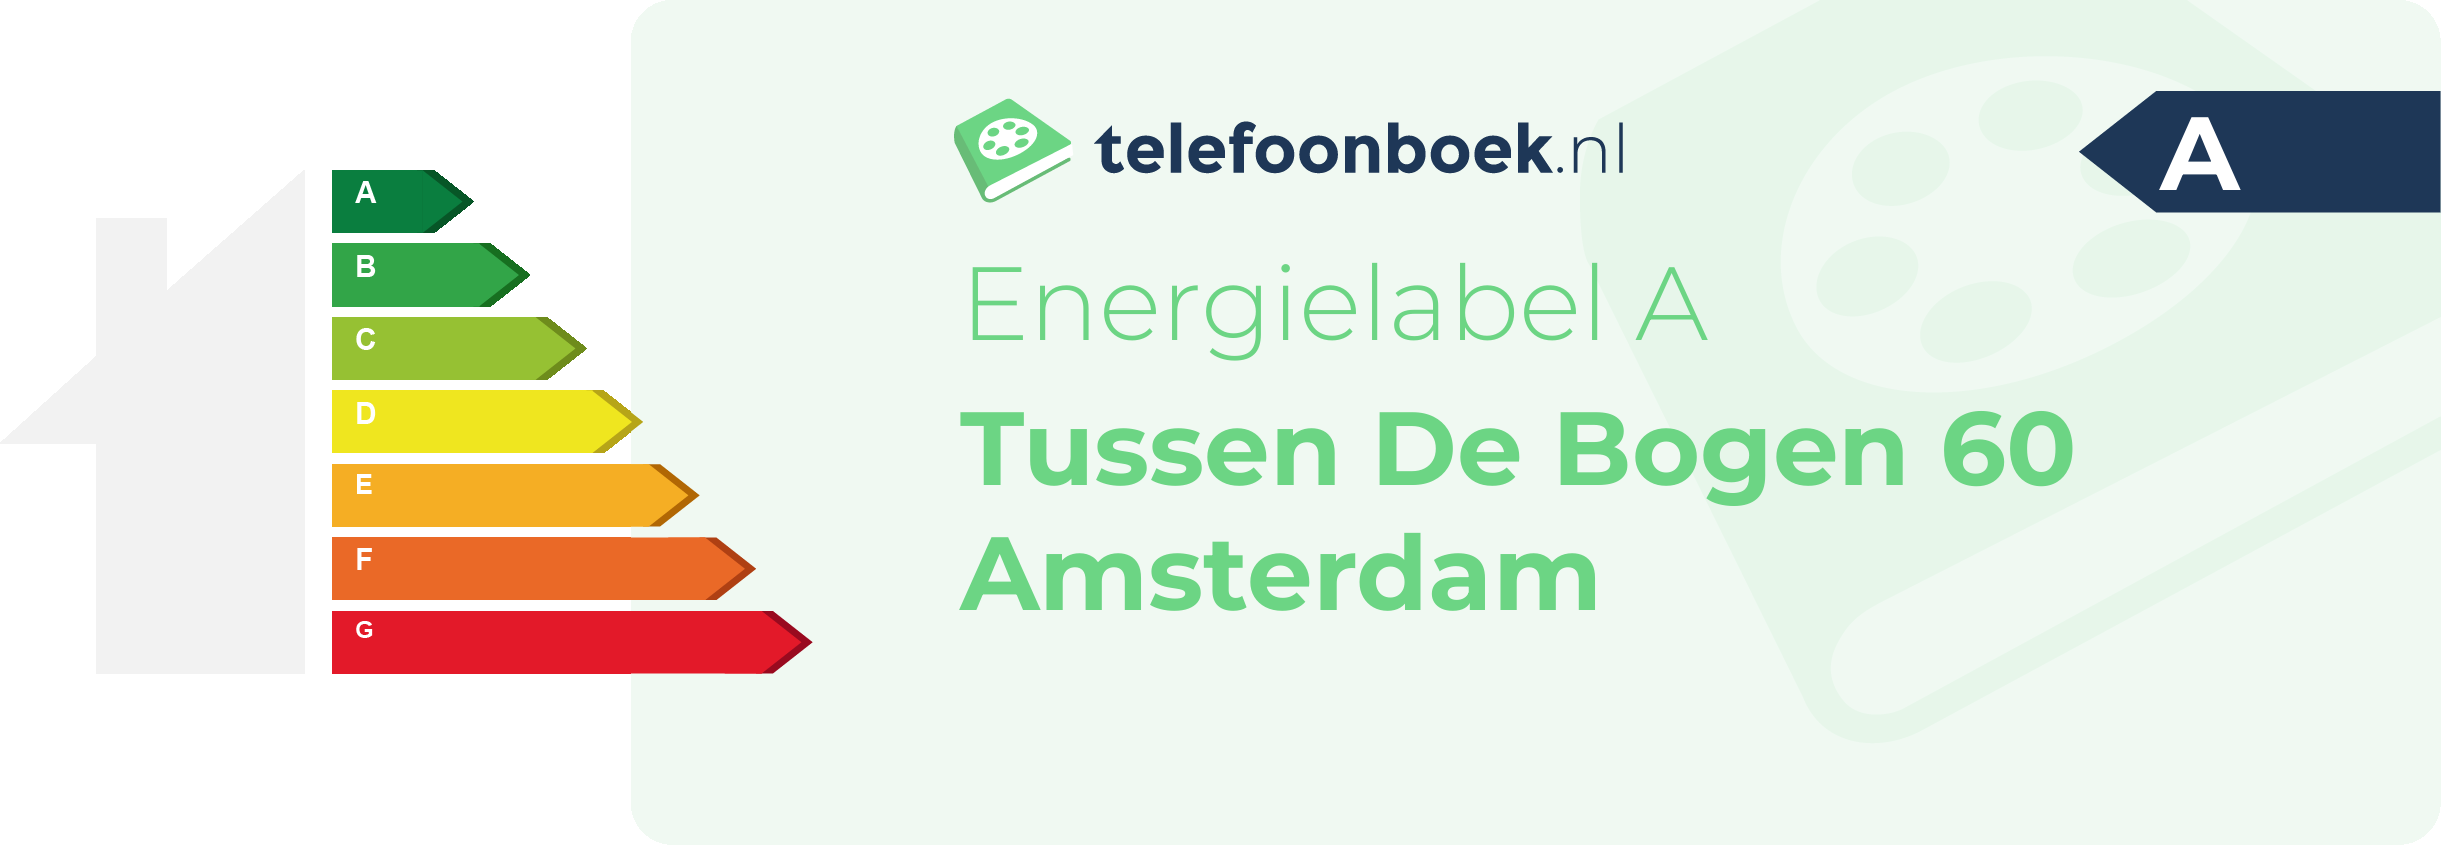 Energielabel Tussen De Bogen 60 Amsterdam